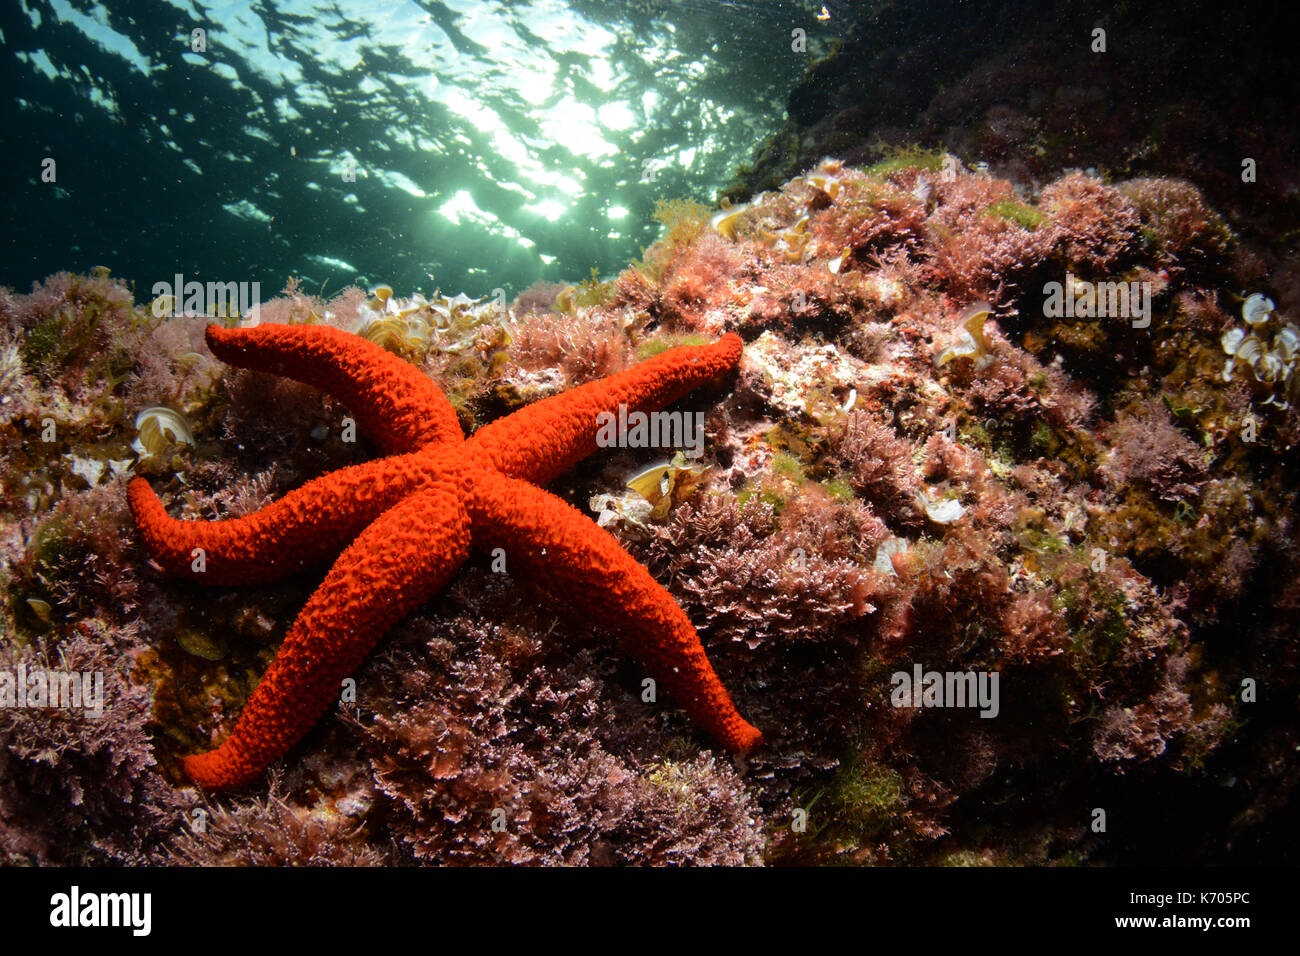 Red starfish underwater at Cala Blanca, Menorca Stock Photo